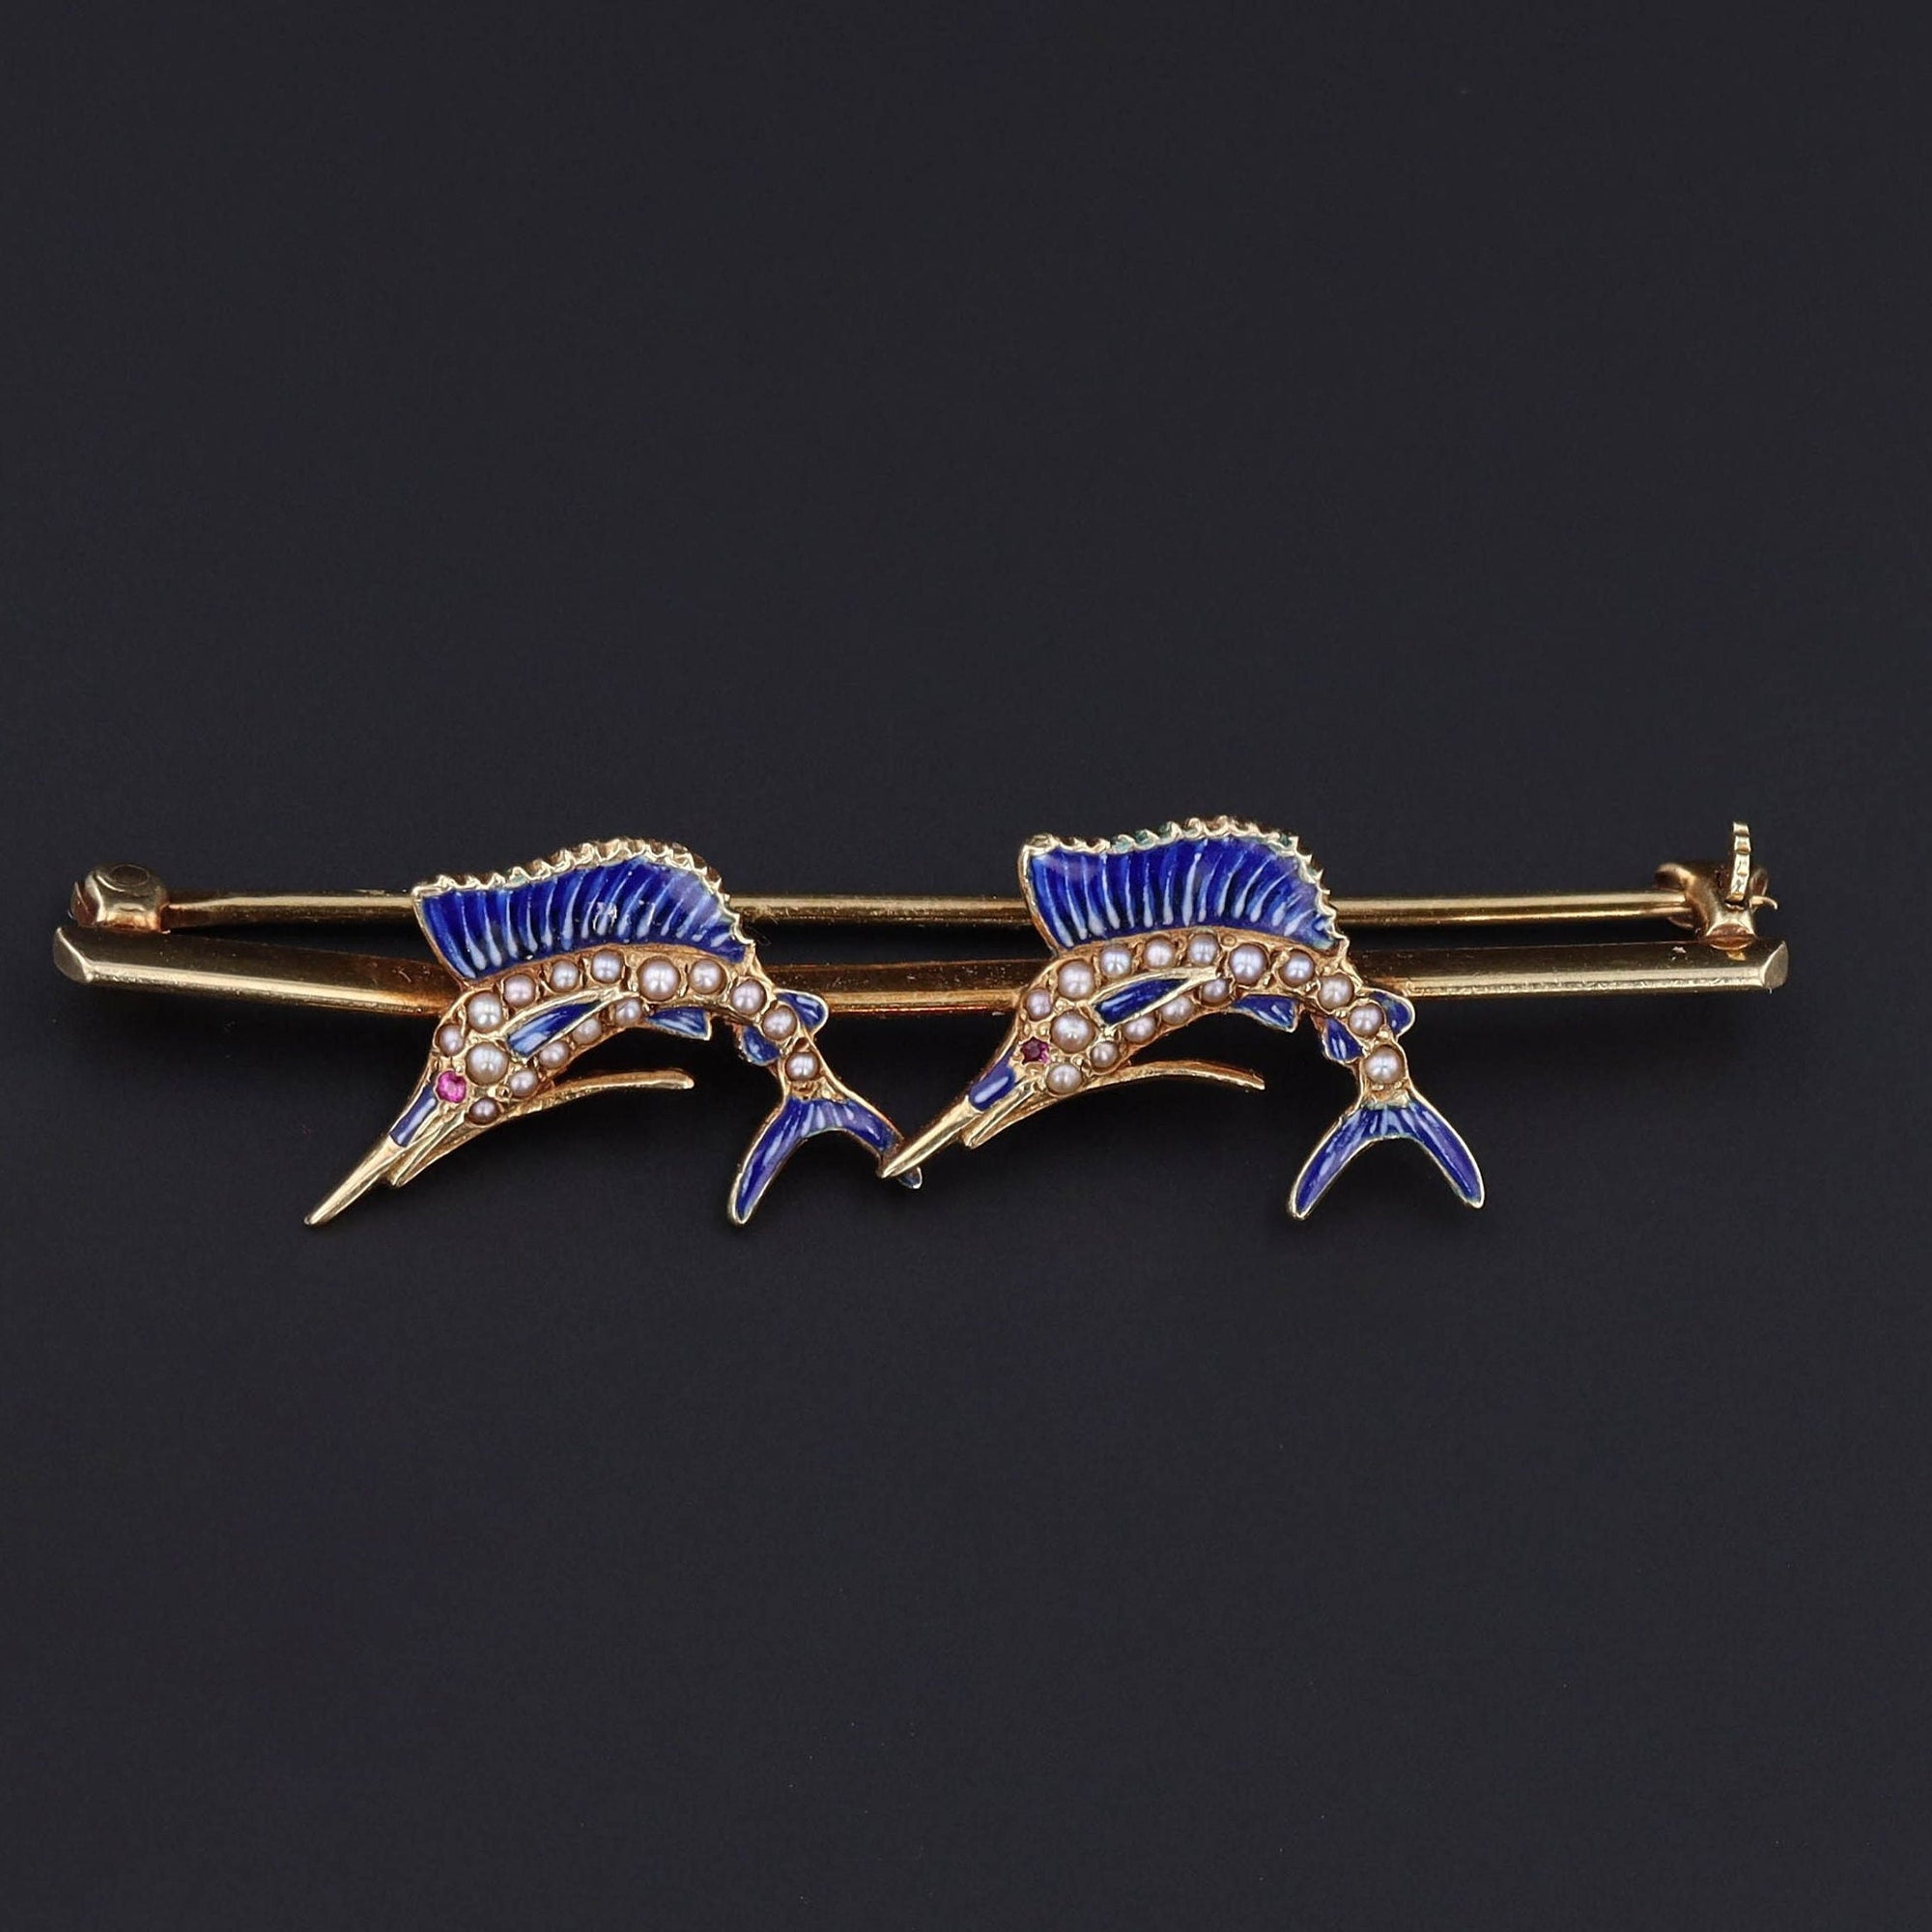 Antique Sailfish Brooch | Fish Pin 